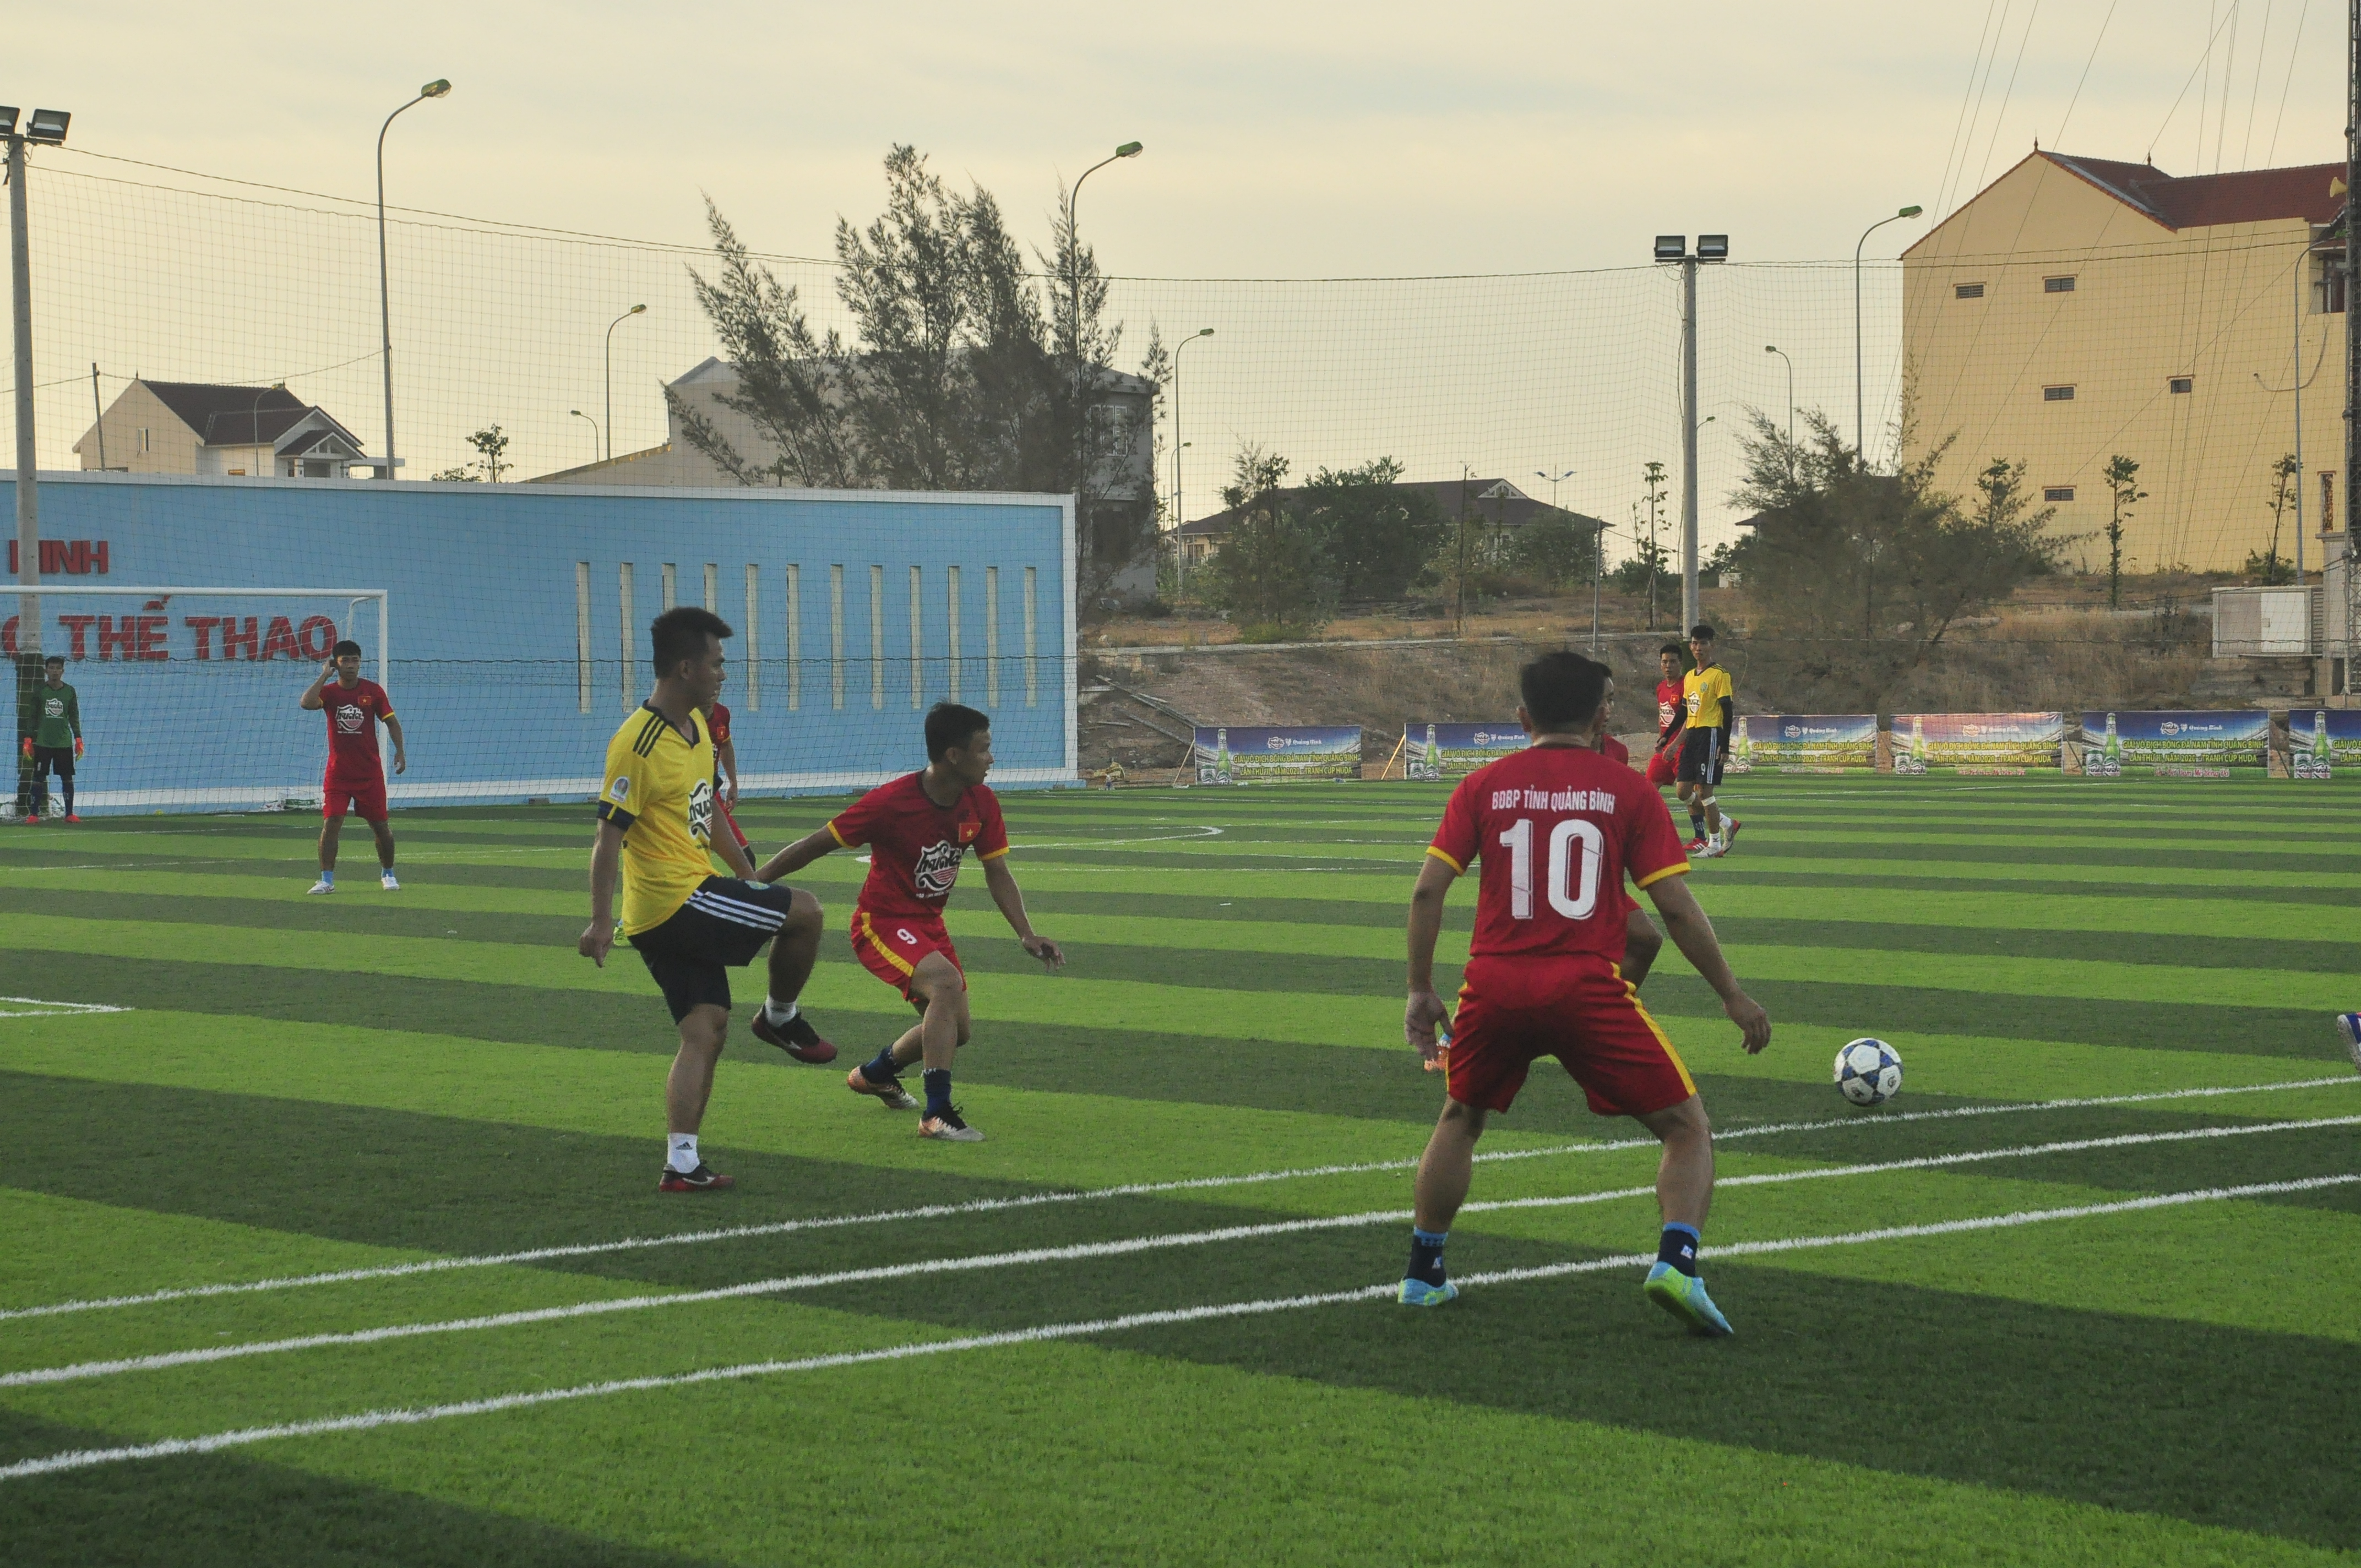 Giải bóng đá Đại hội TDTT tỉnh Quảng Bình lần thứ IX (giải 11 người) được tổ chức trên sân cỏ nhân tạo ở xã Bảo Ninh (Đồng Hới).